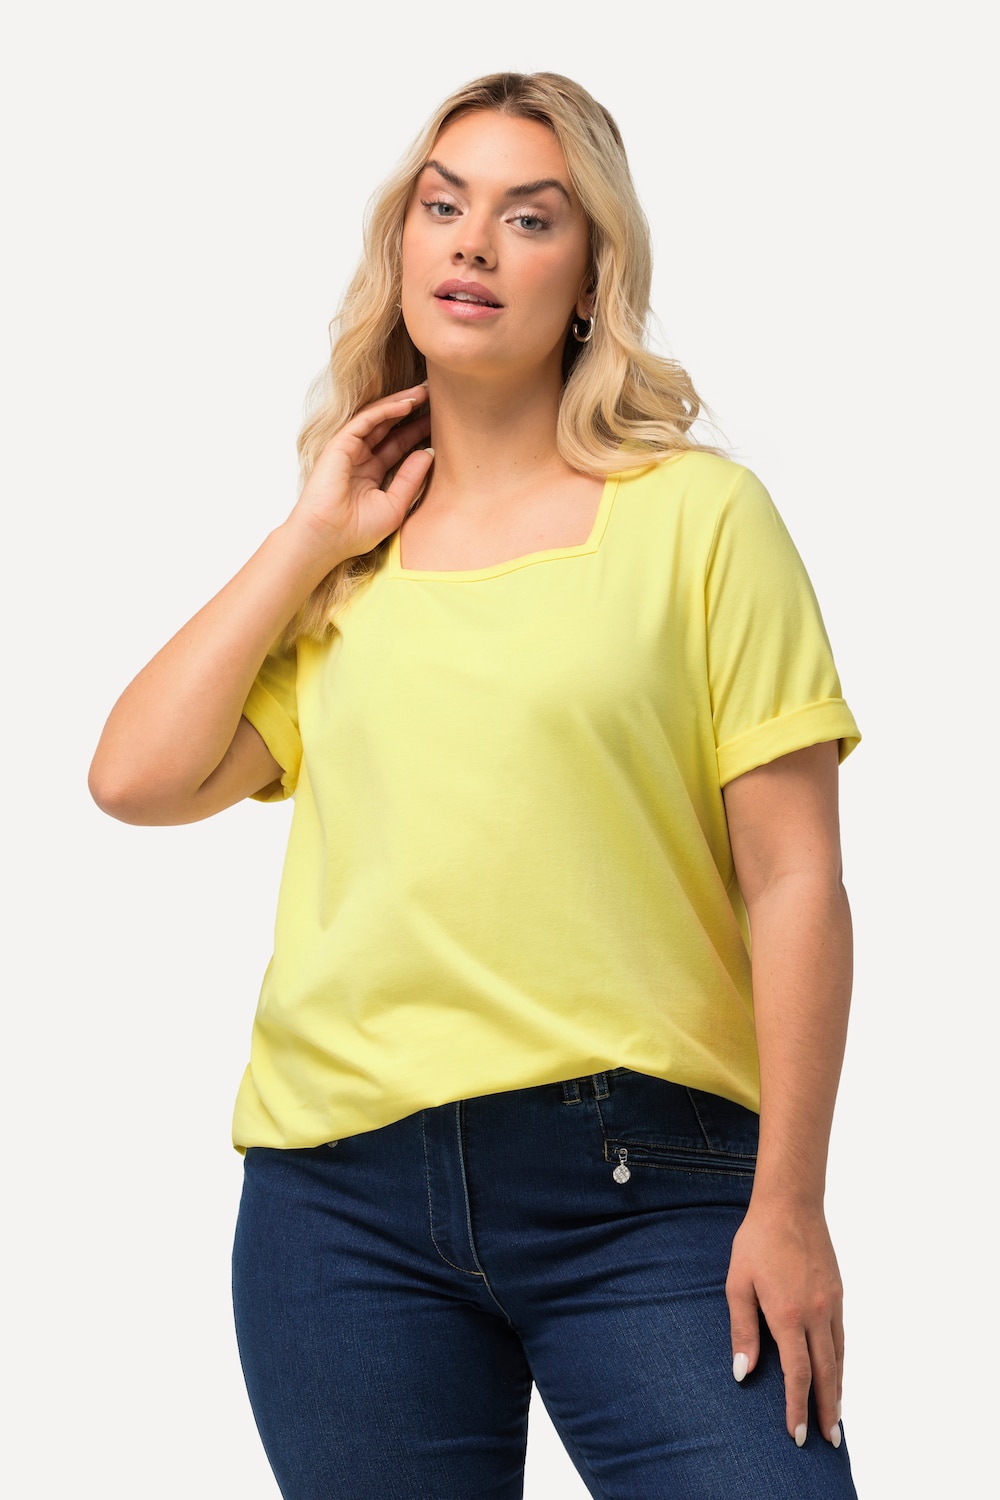 Grote Maten T-shirt, Dames, geel, Maat: 42/44, Katoen, Ulla Popken